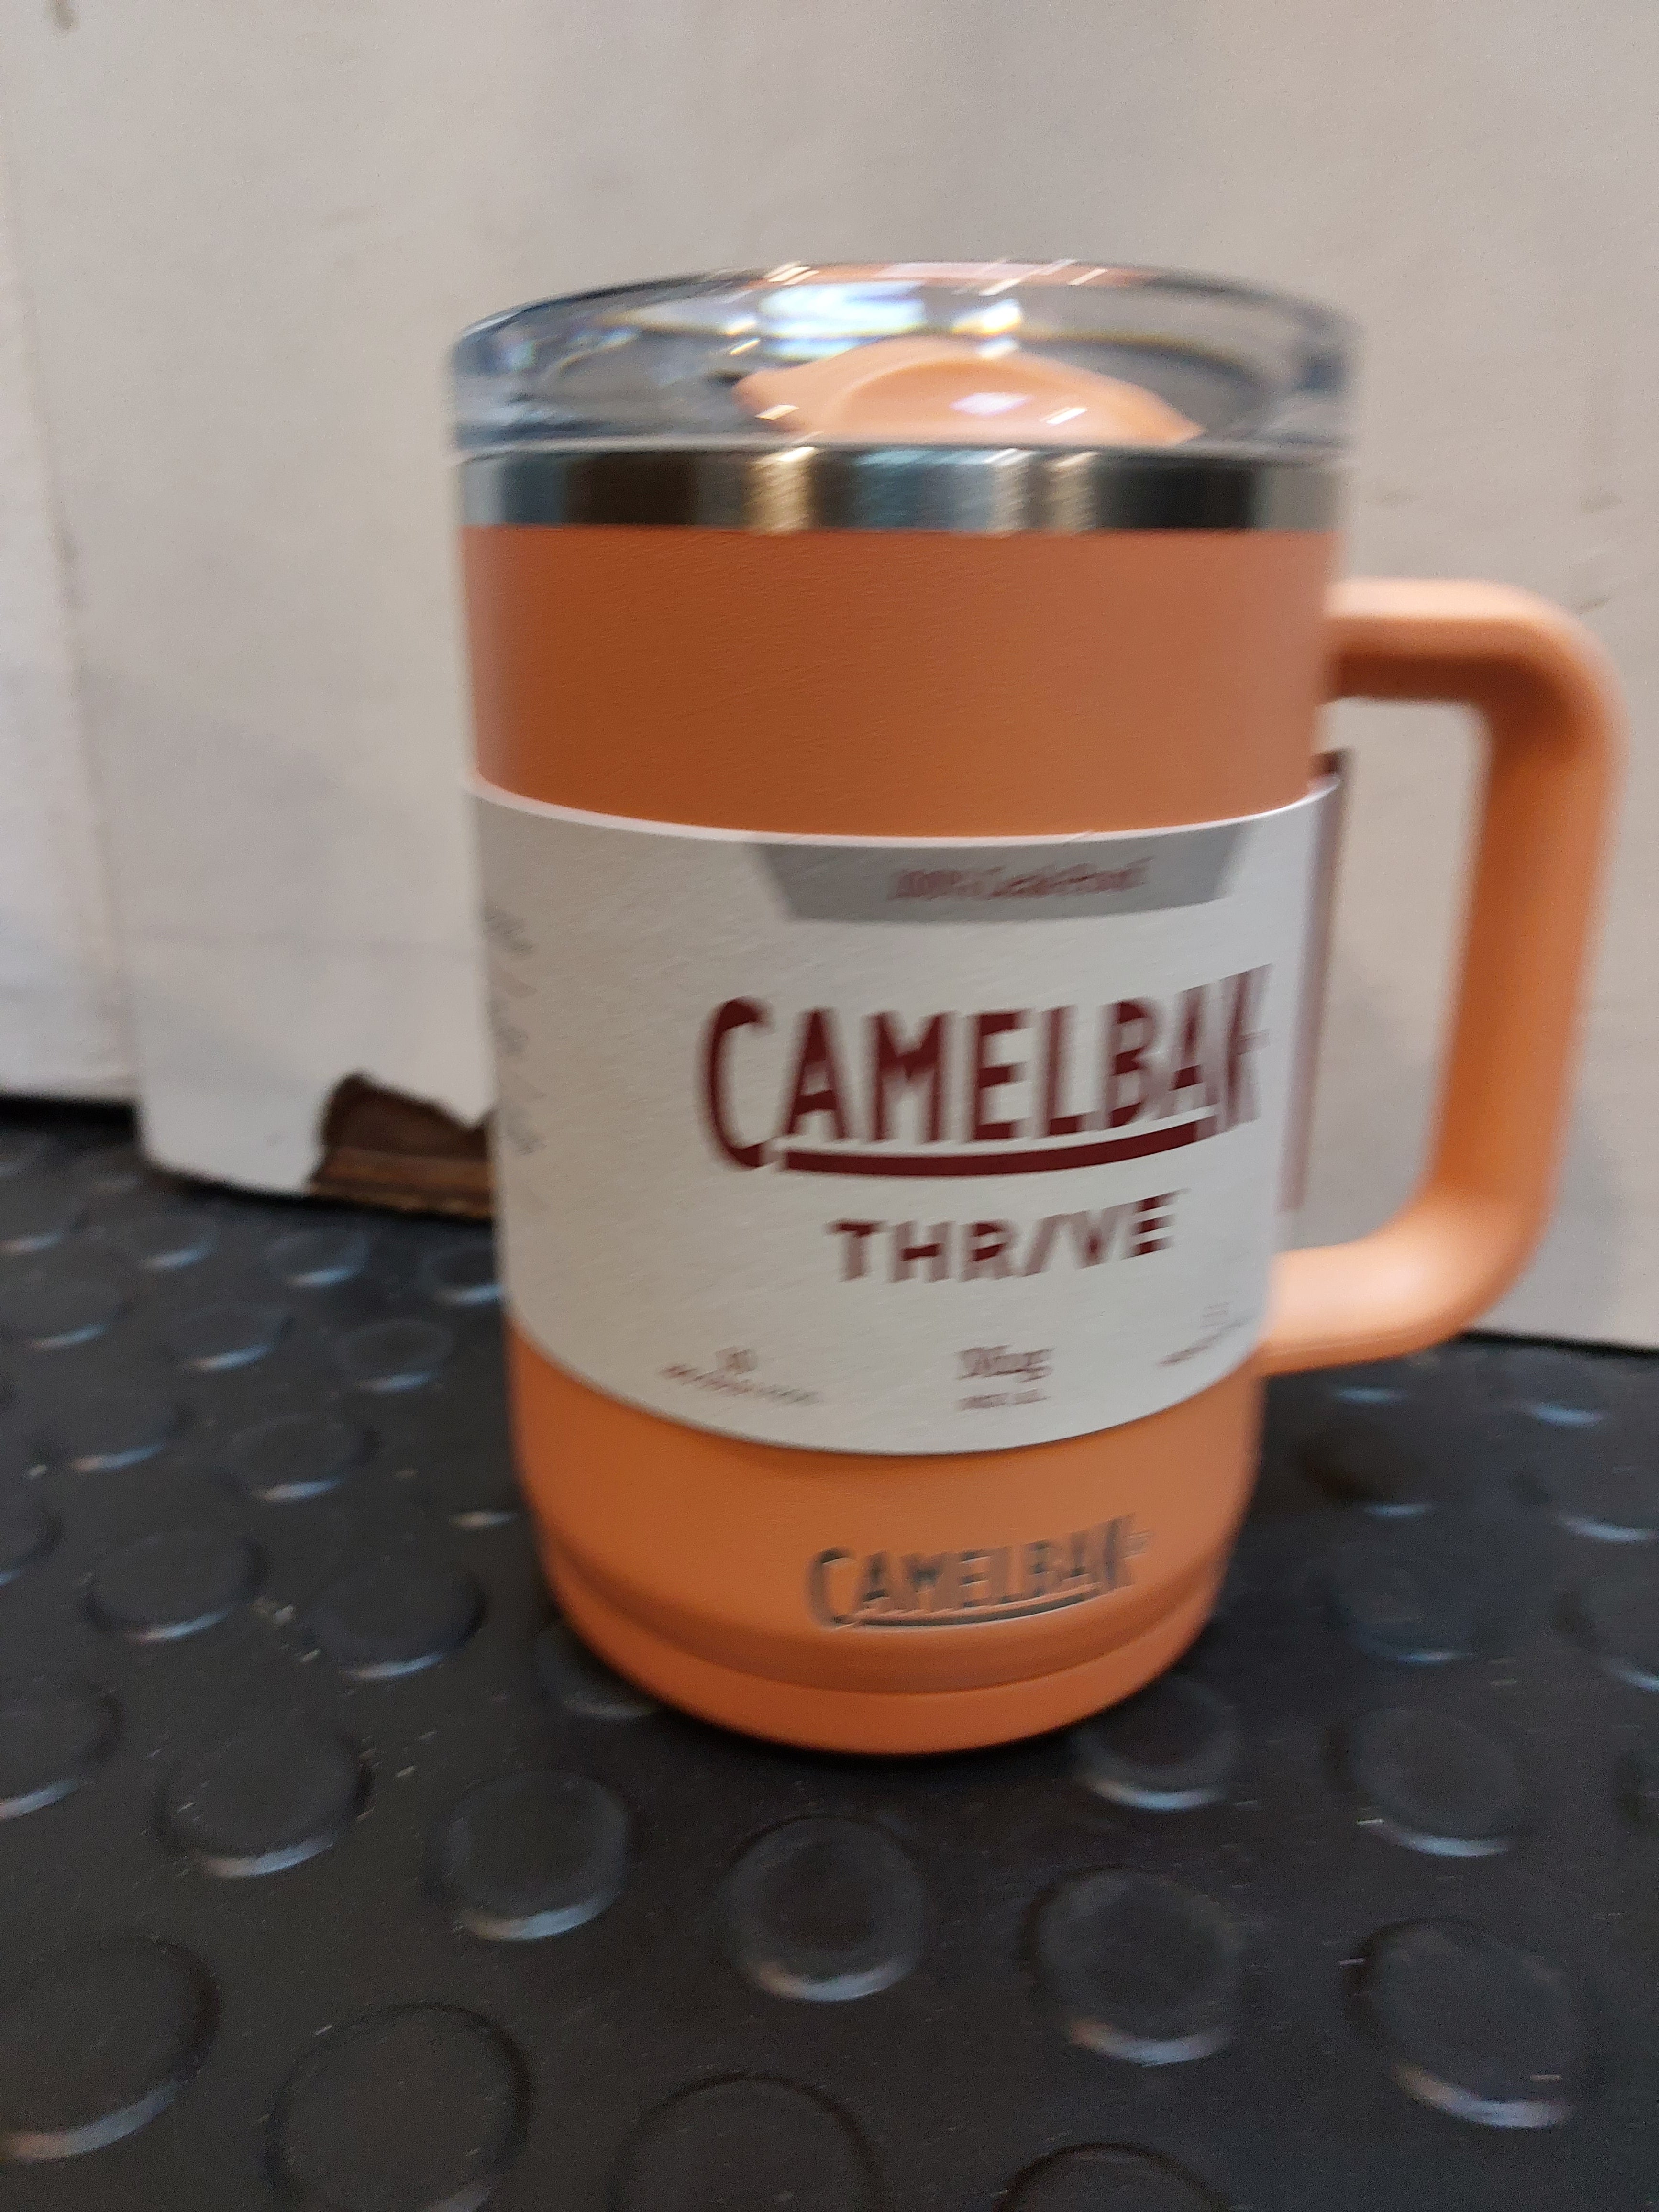 CamelBak Thriver Stainless Steel Bottles,Mug